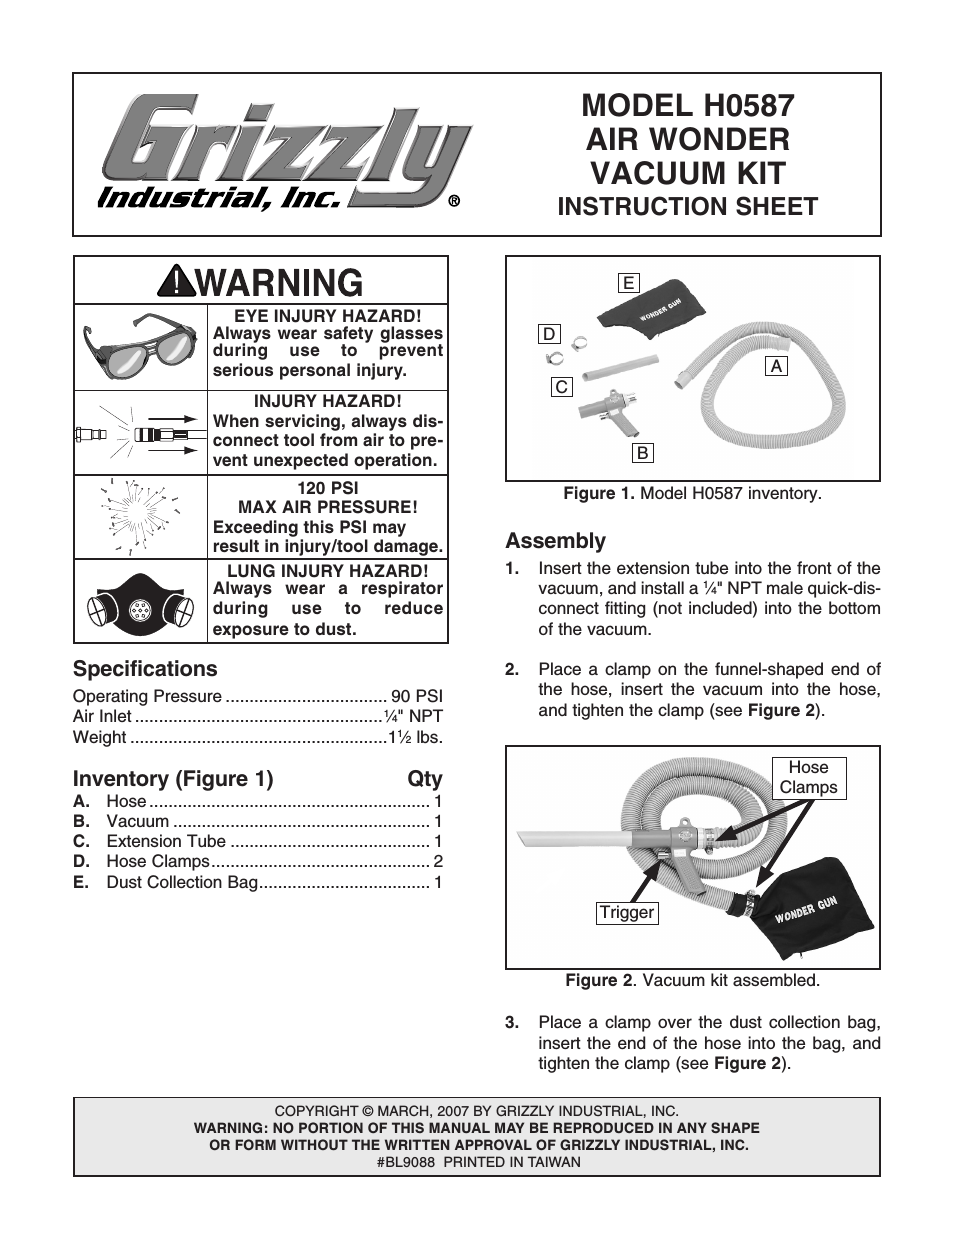 Air Wonder Vacuum Kit H0587